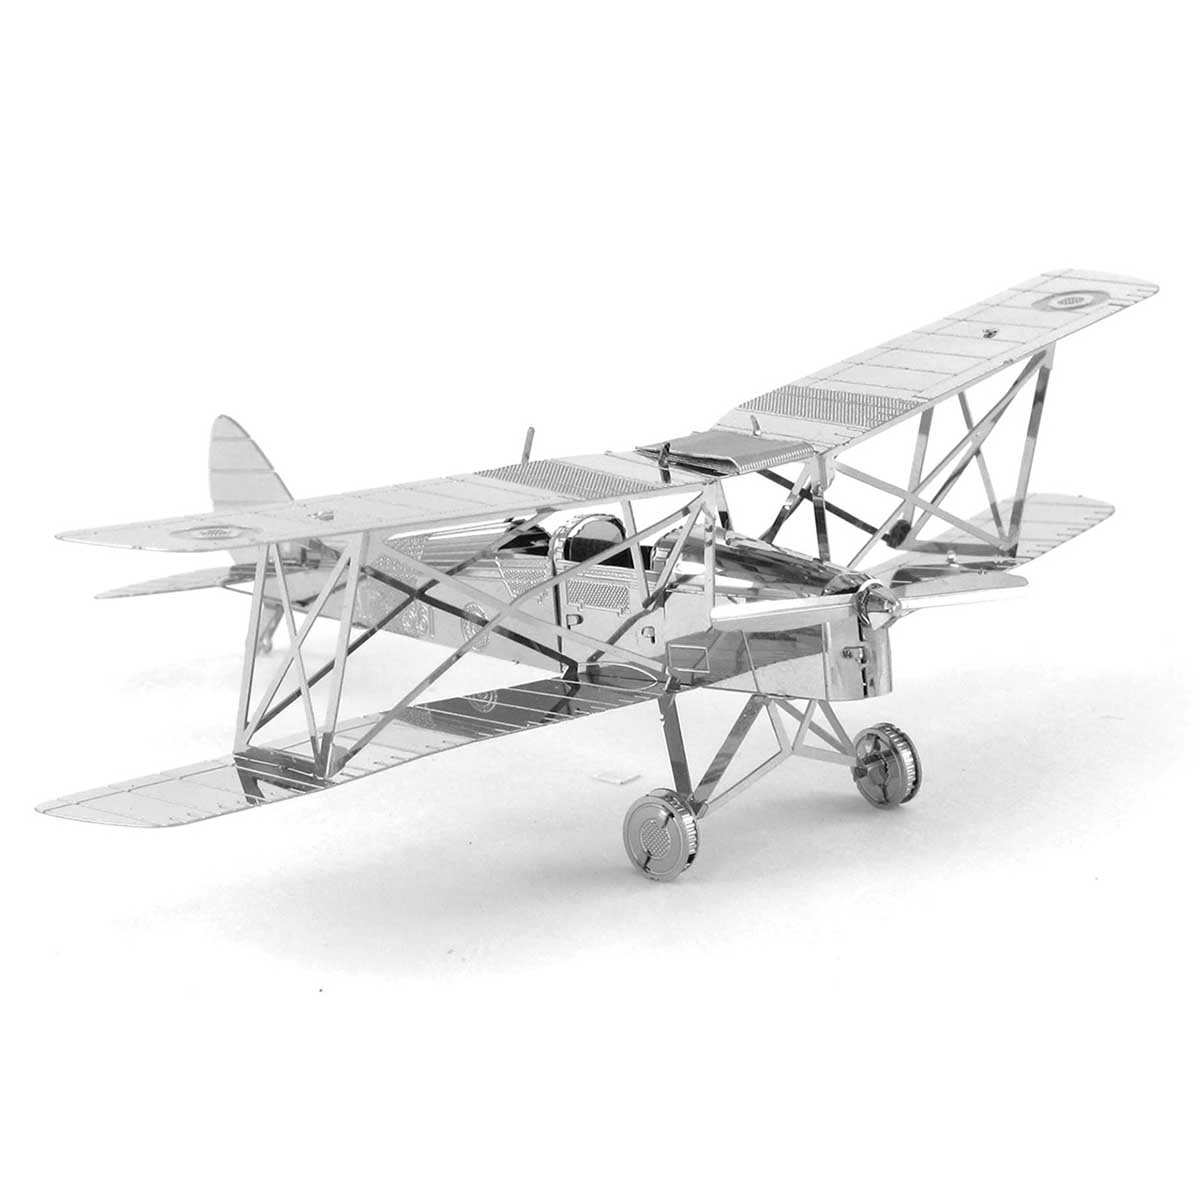 DH82 Tiger Moth Plane 3D Puzzle